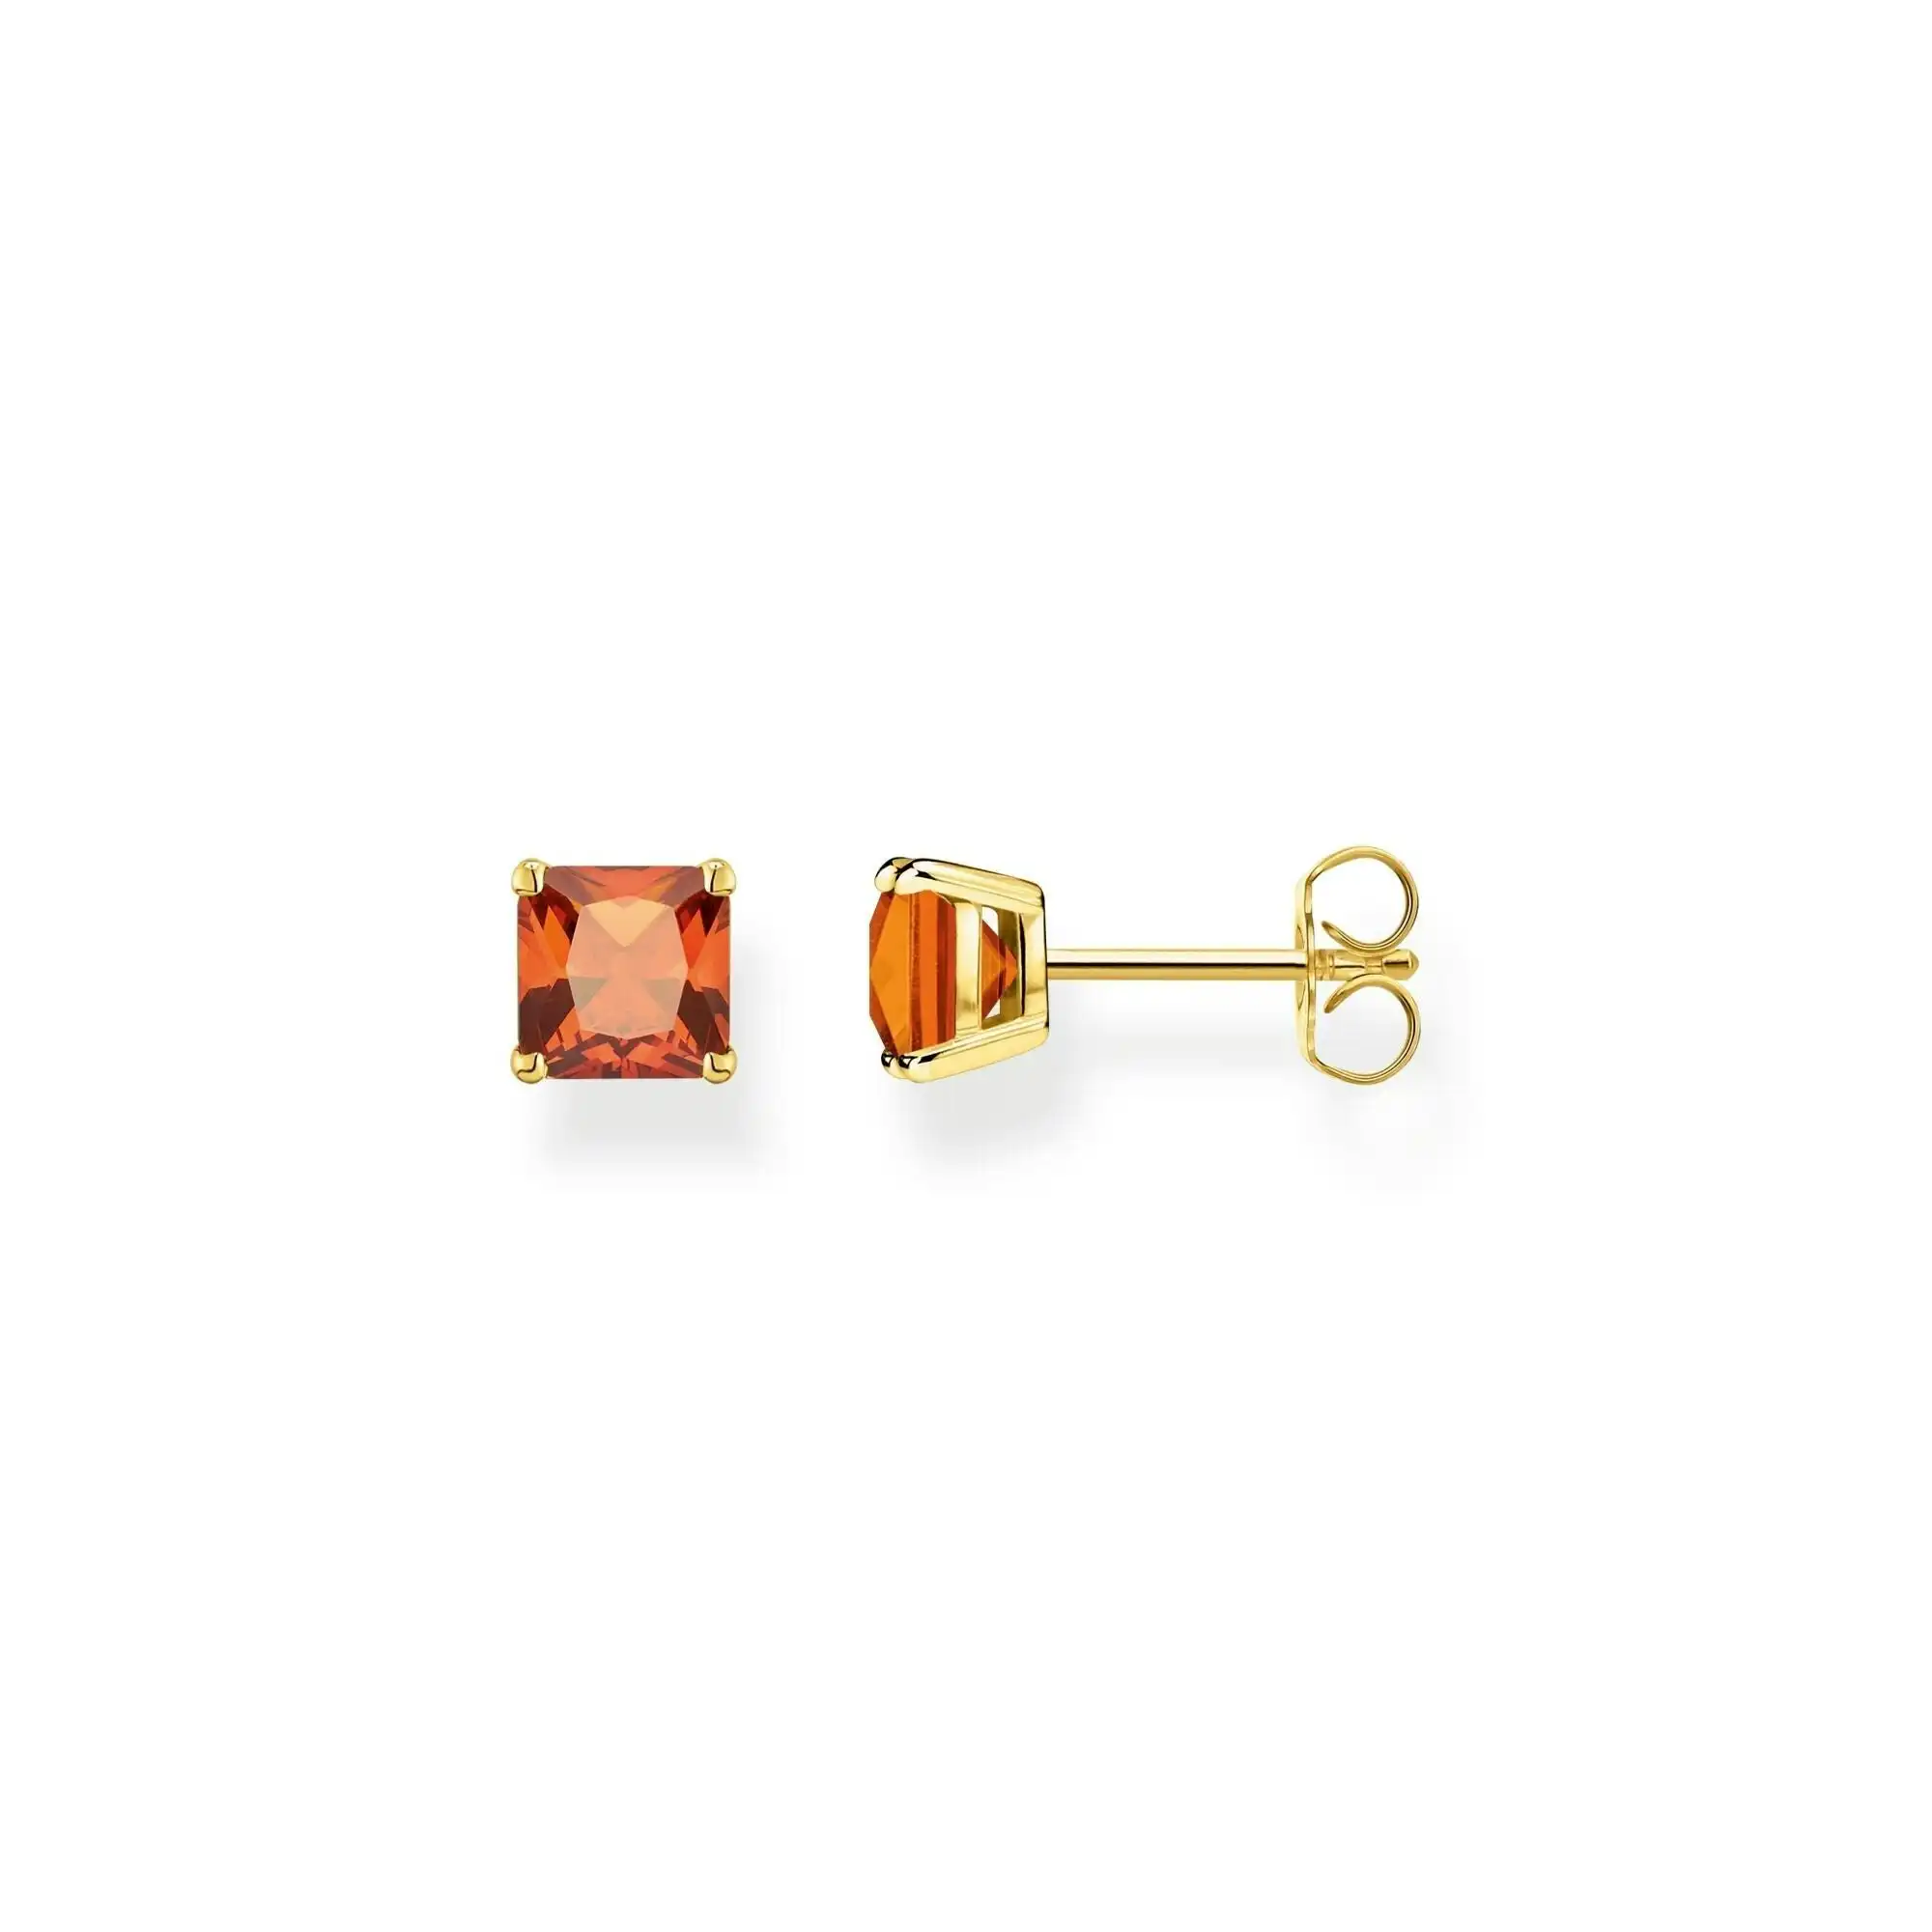 Thomas Sabo Ear studs orange stone gold